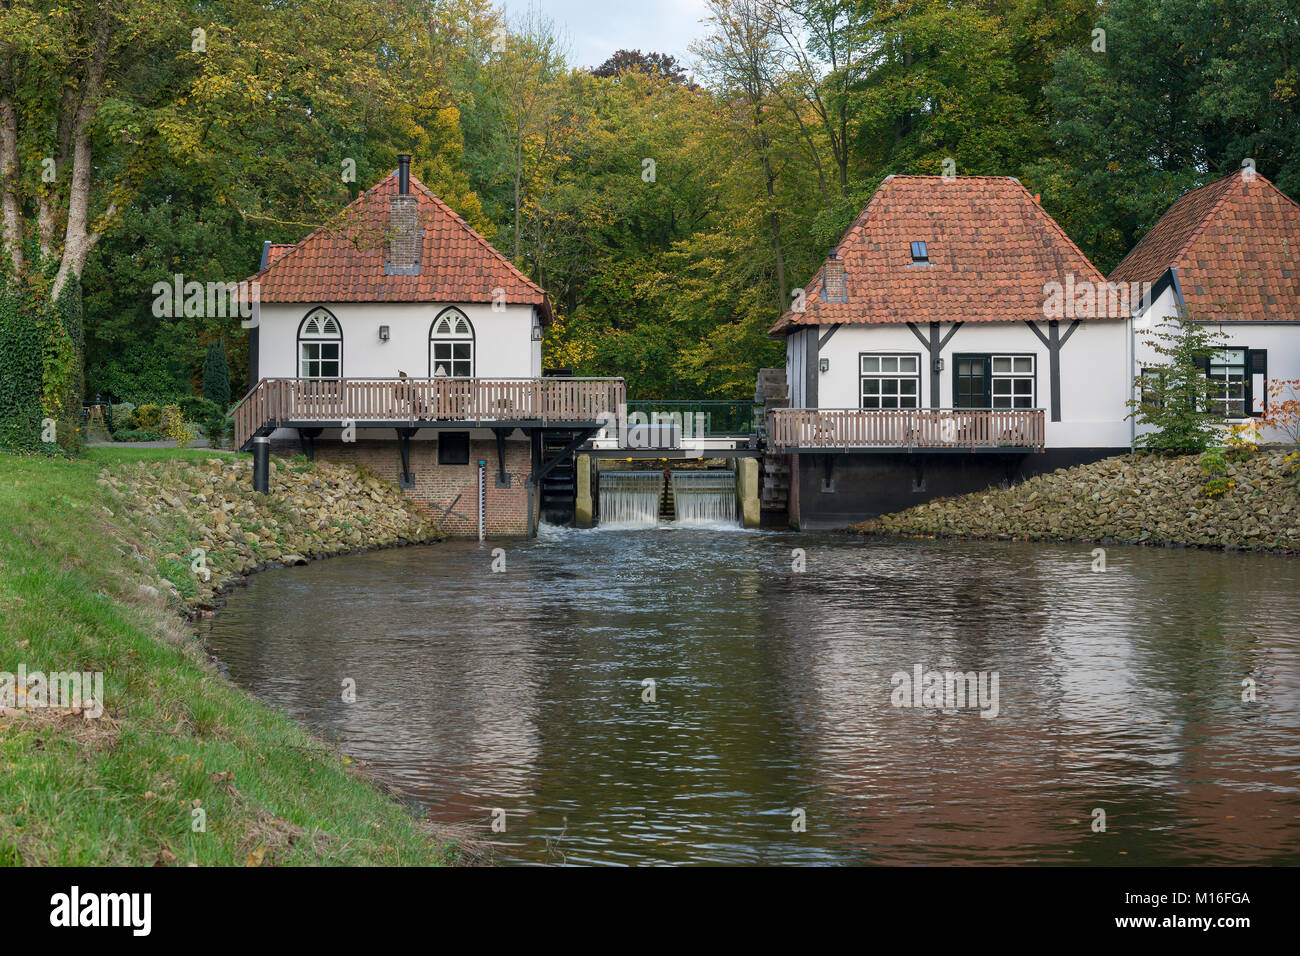 Wassermühle genannt Den Helder in Winterswijk in den Niederlanden  Stockfotografie - Alamy